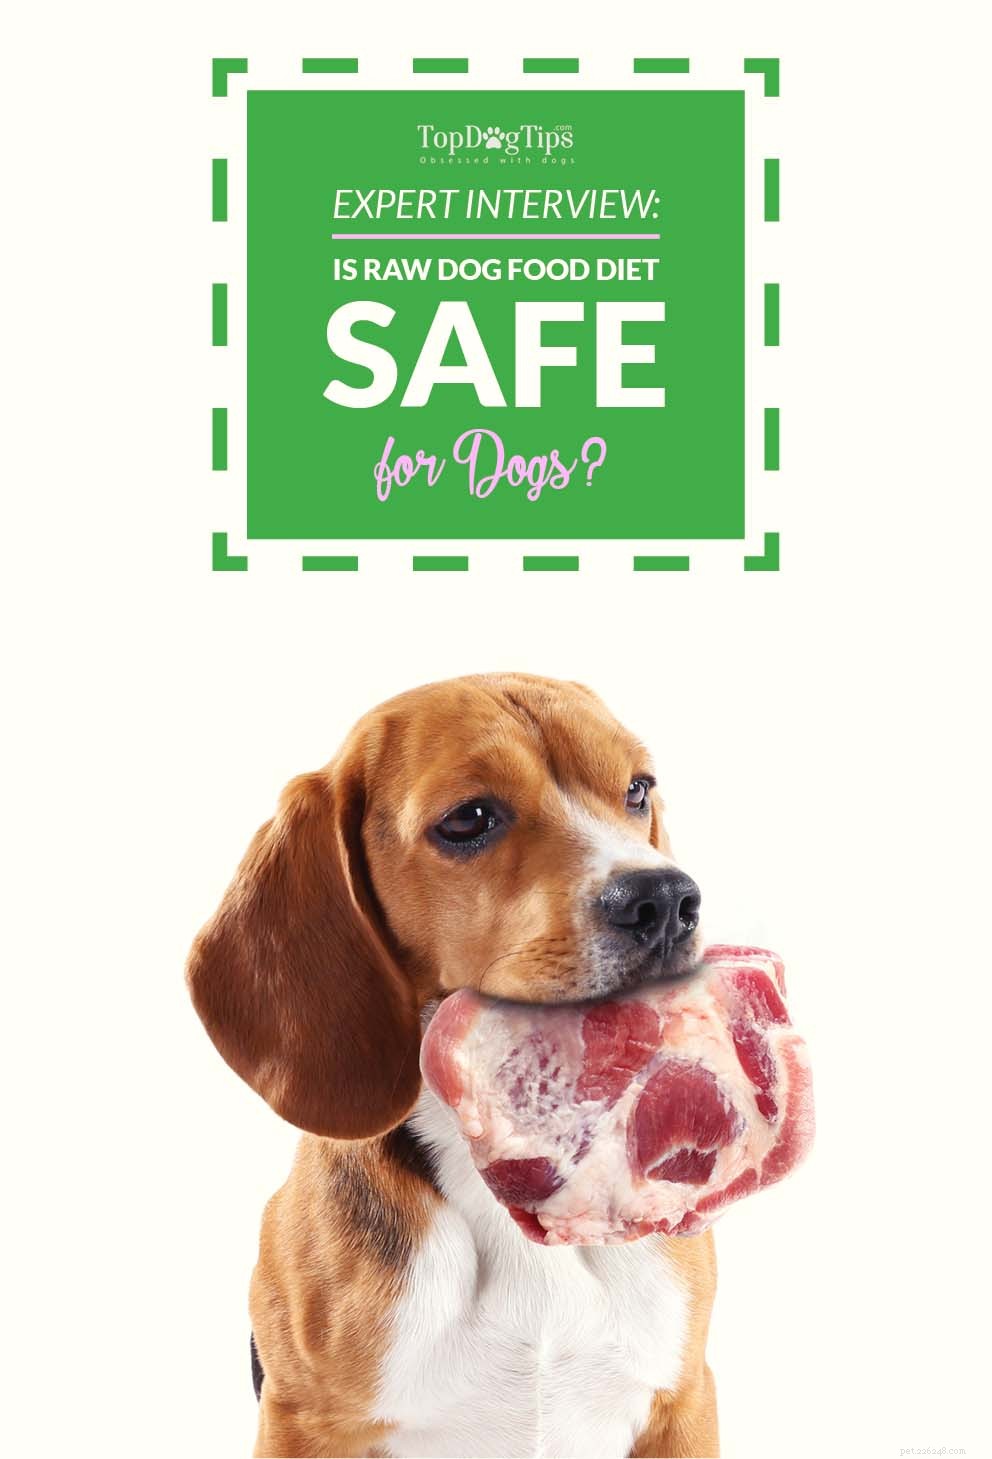 Entrevista:A dieta de ração crua para cães é segura para cães?